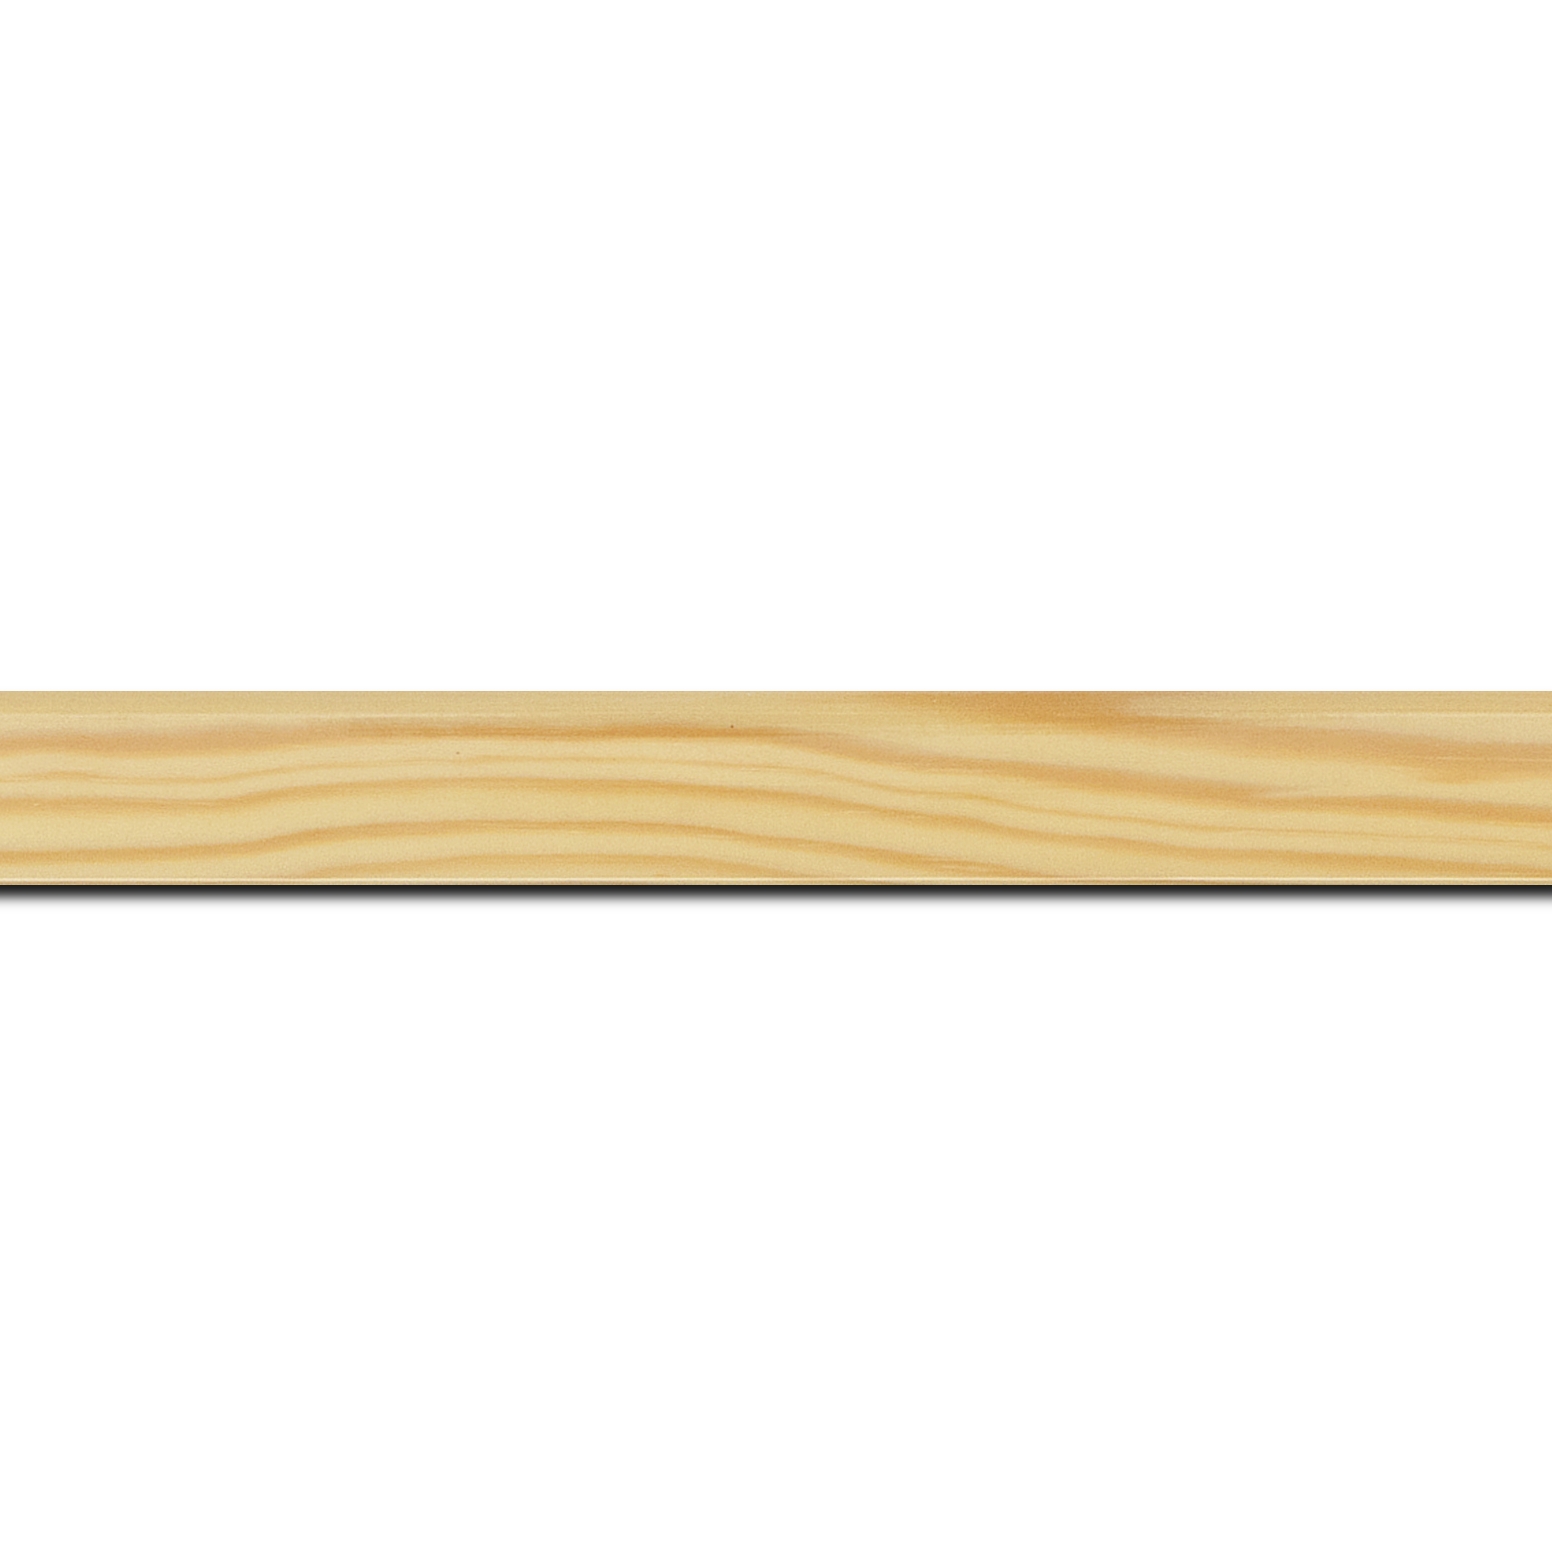 Pack par 12m, bois profil arrondi plongeant largeur 2cm couleur naturel vernis sur pin (veine du bois apparent) (longueur baguette pouvant varier entre 2.40m et 3m selon arrivage des bois)